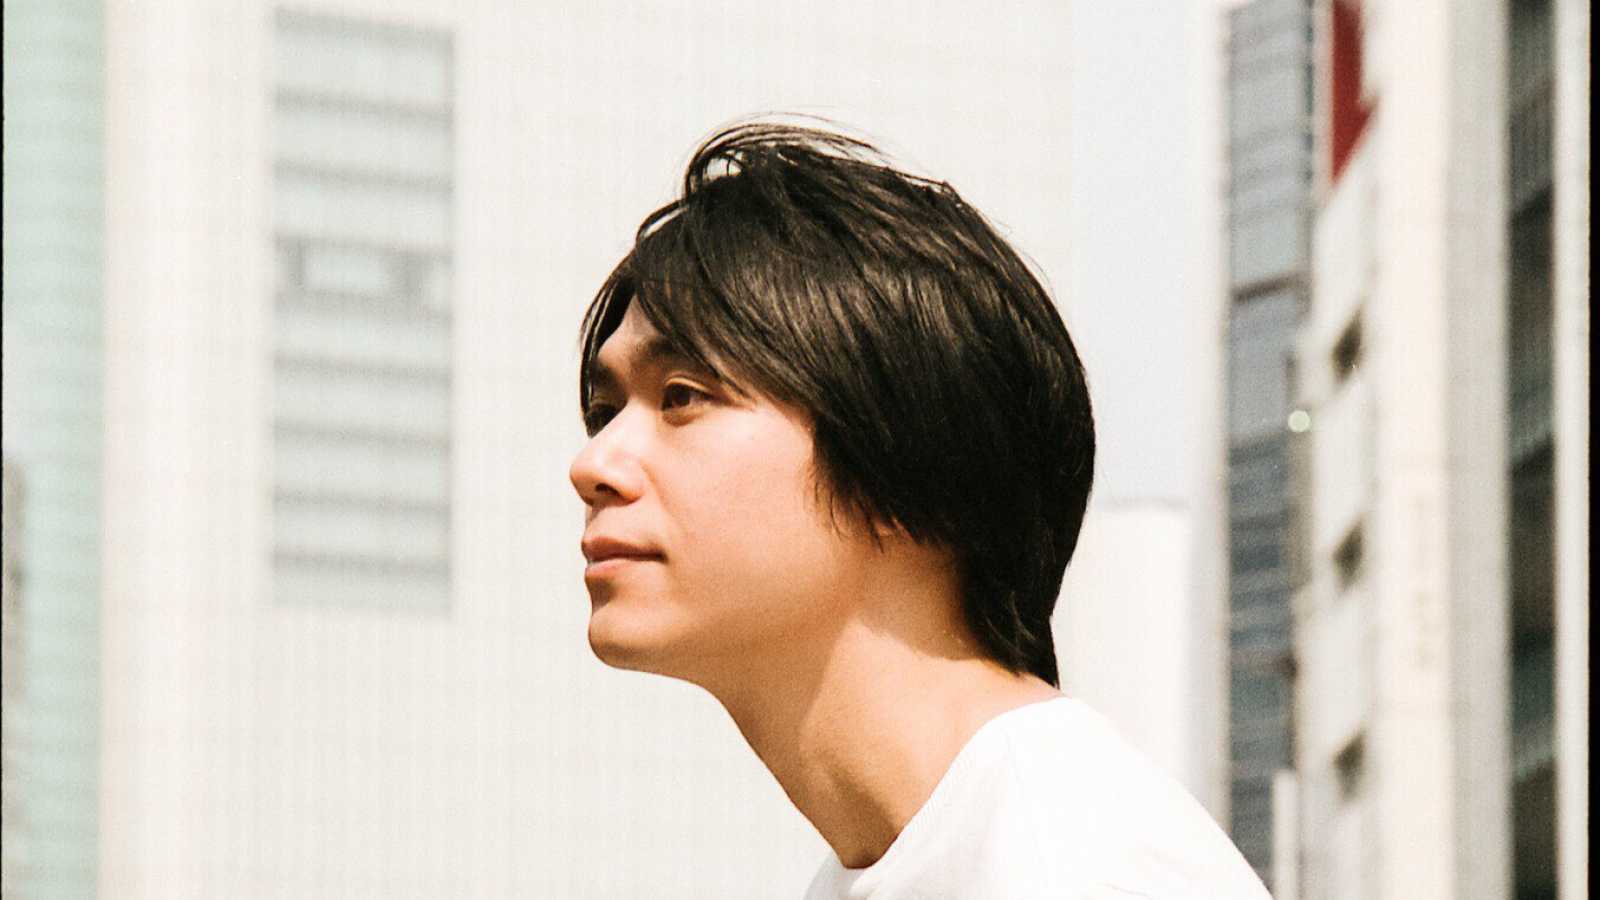 Szczegóły na temat pierwszego solowego albumu Soheia Oyamady © Oyamada Sohei. All rights reserved.